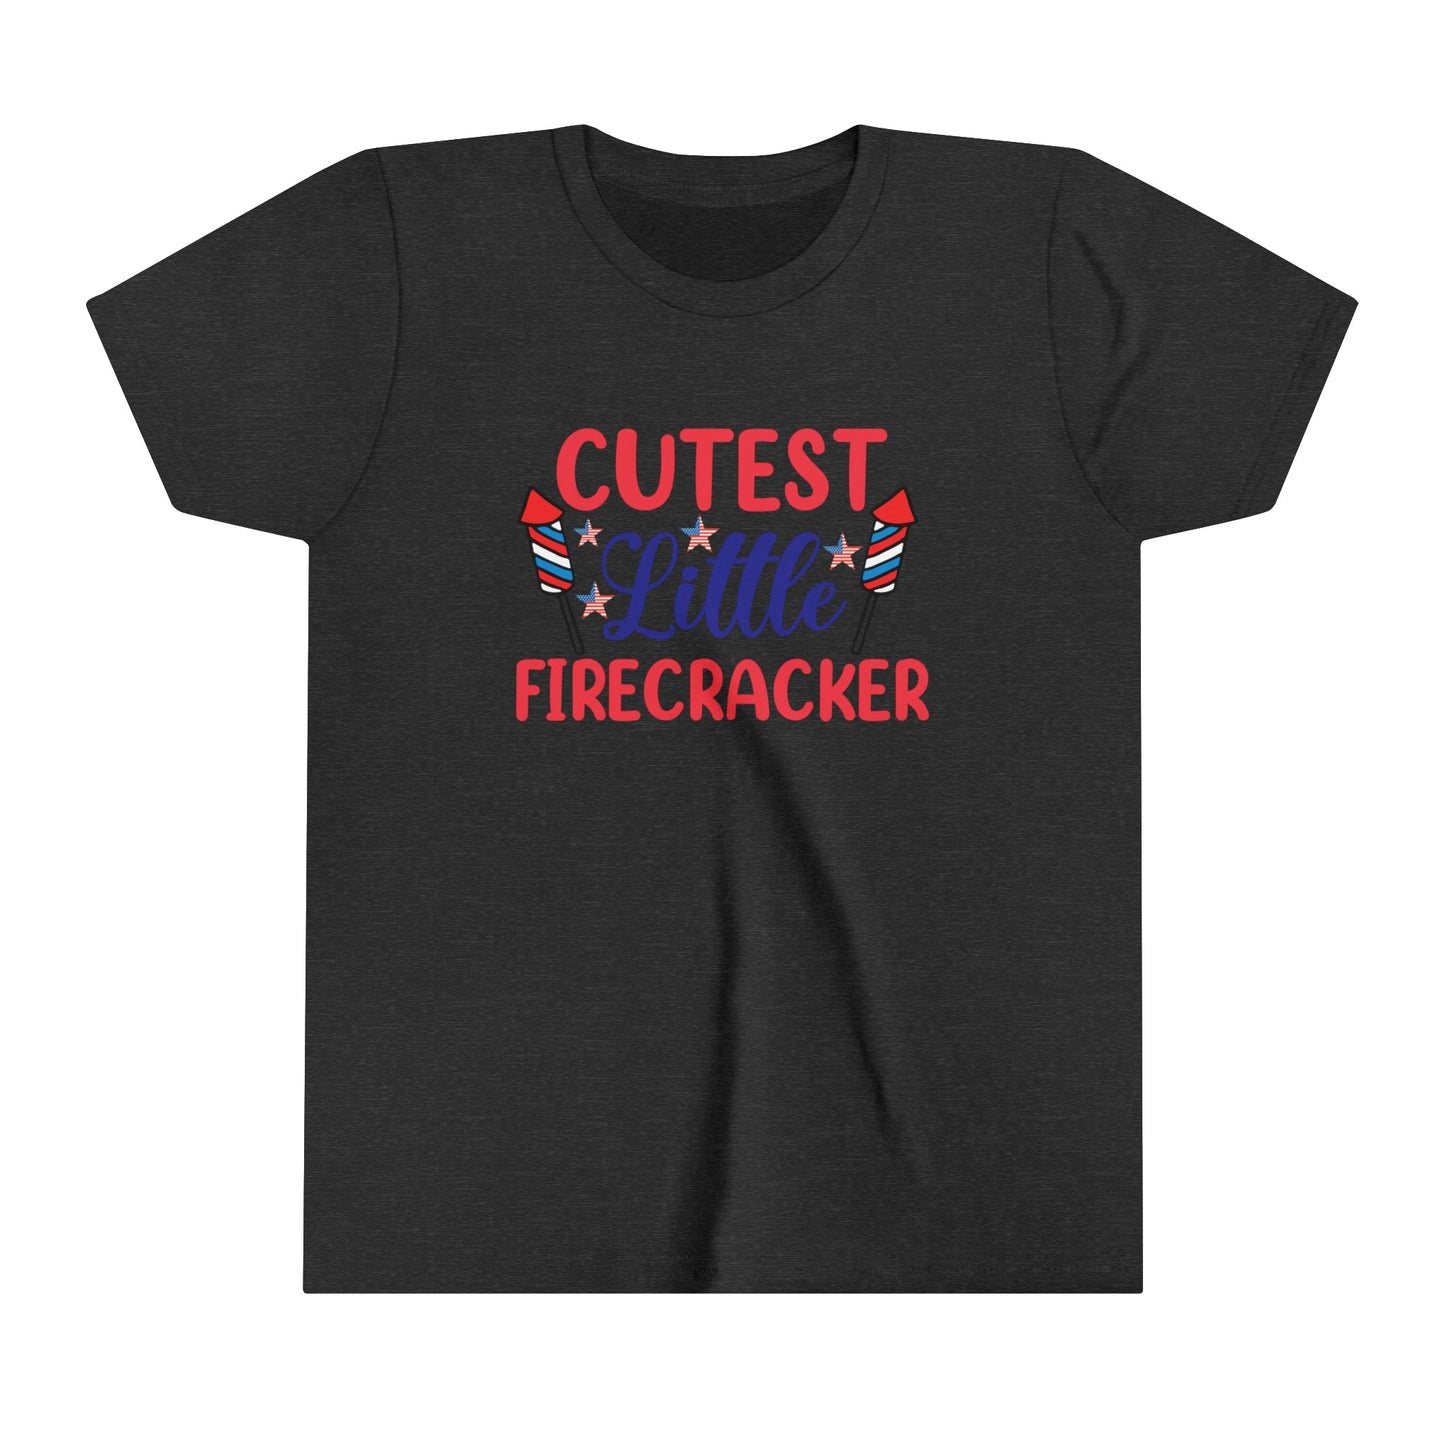 Cutest Little Firecracker 4th of July USA Youth Shirt